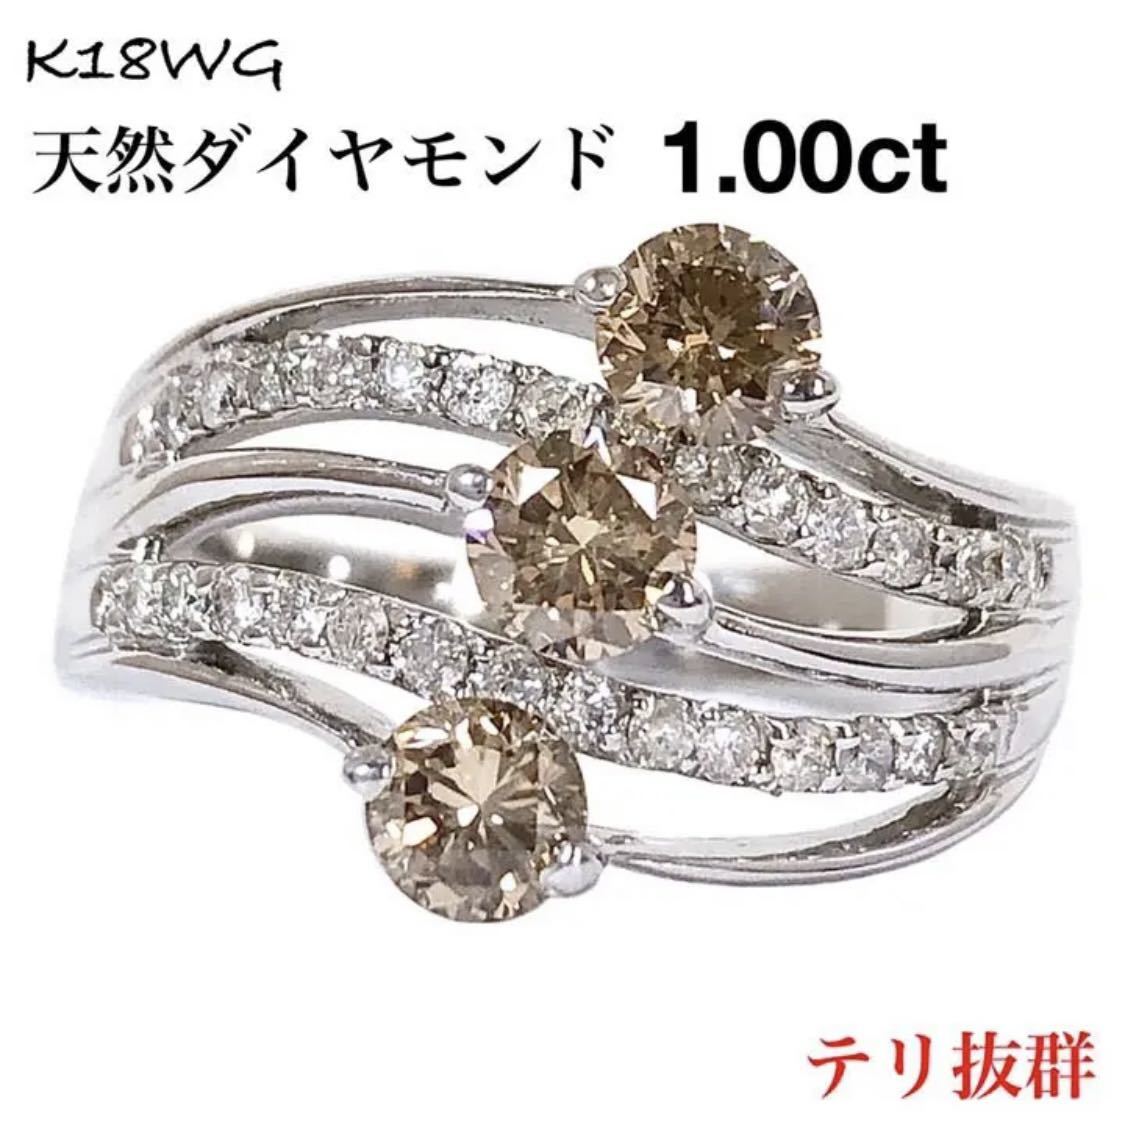 最高級 ブラウン ダイヤ 1.00ct K18WG ダイヤモンド リング 指輪 ...